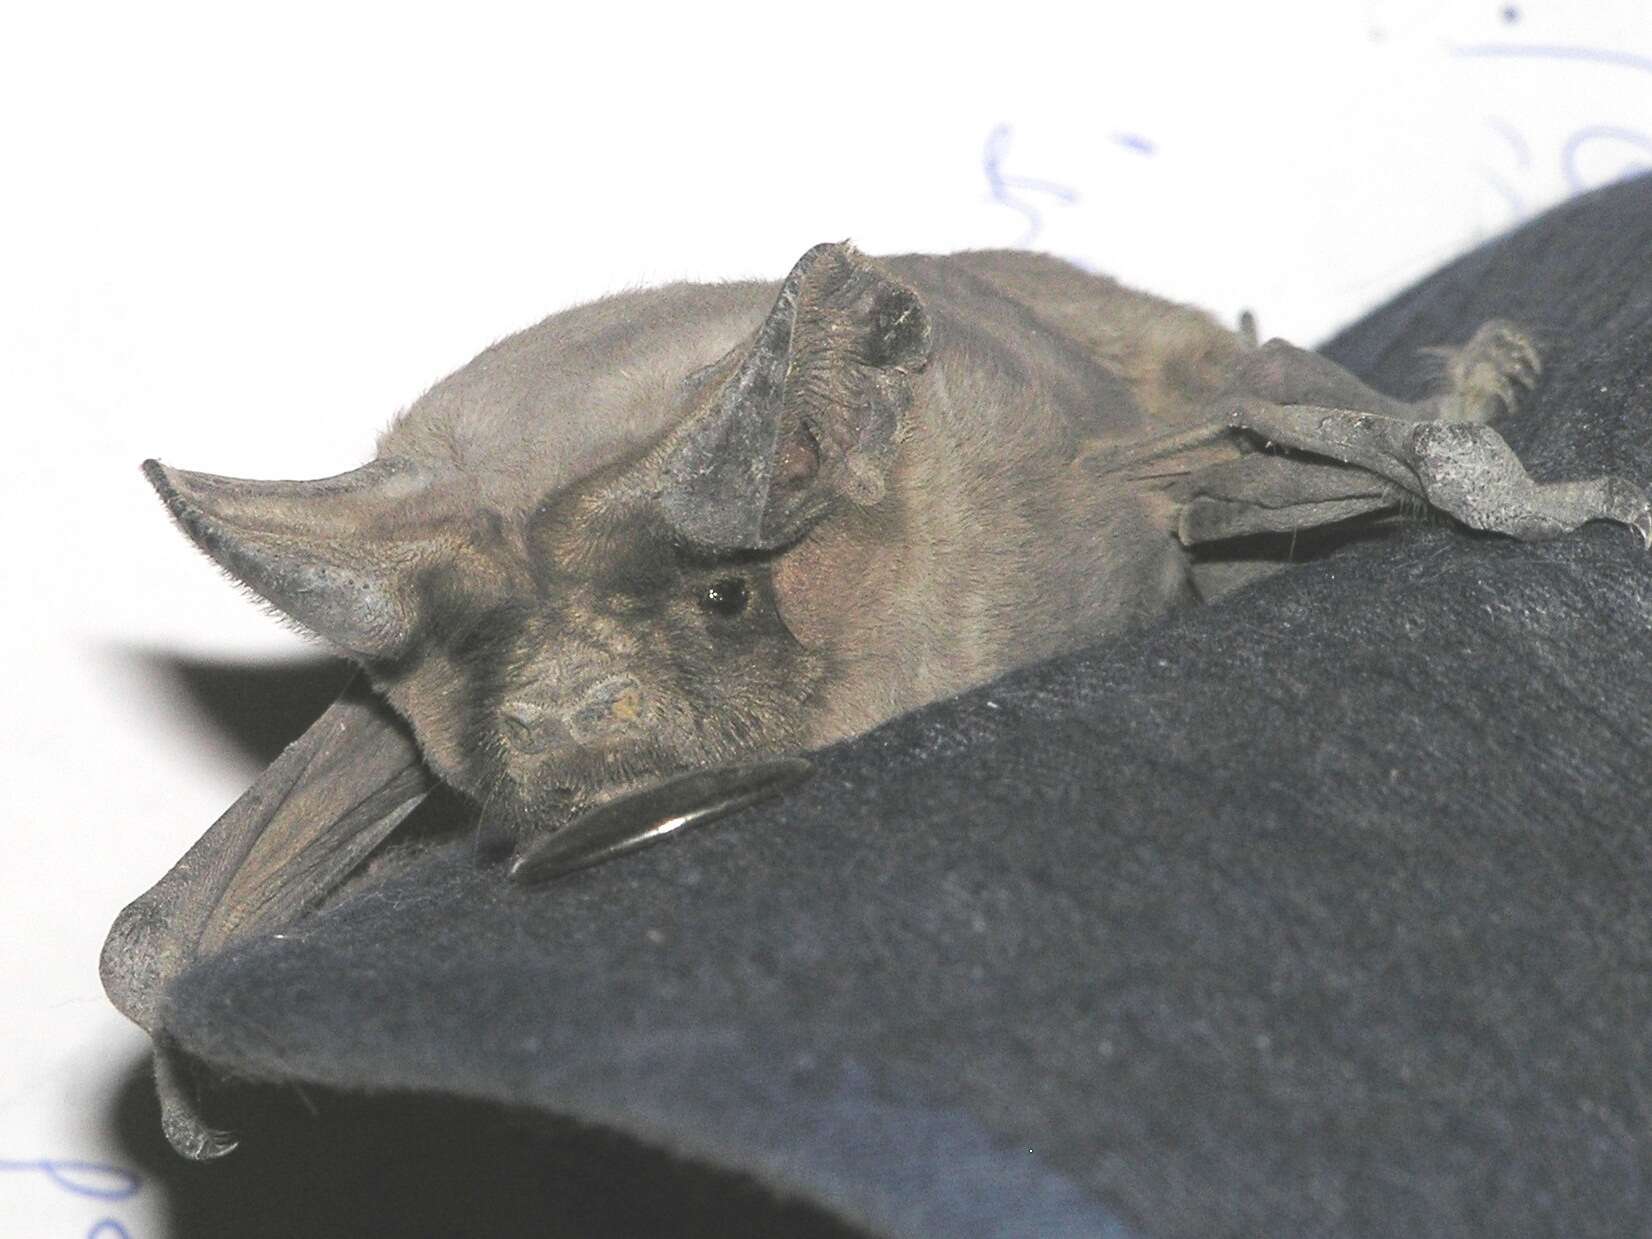 Image of European Free-tailed Bat